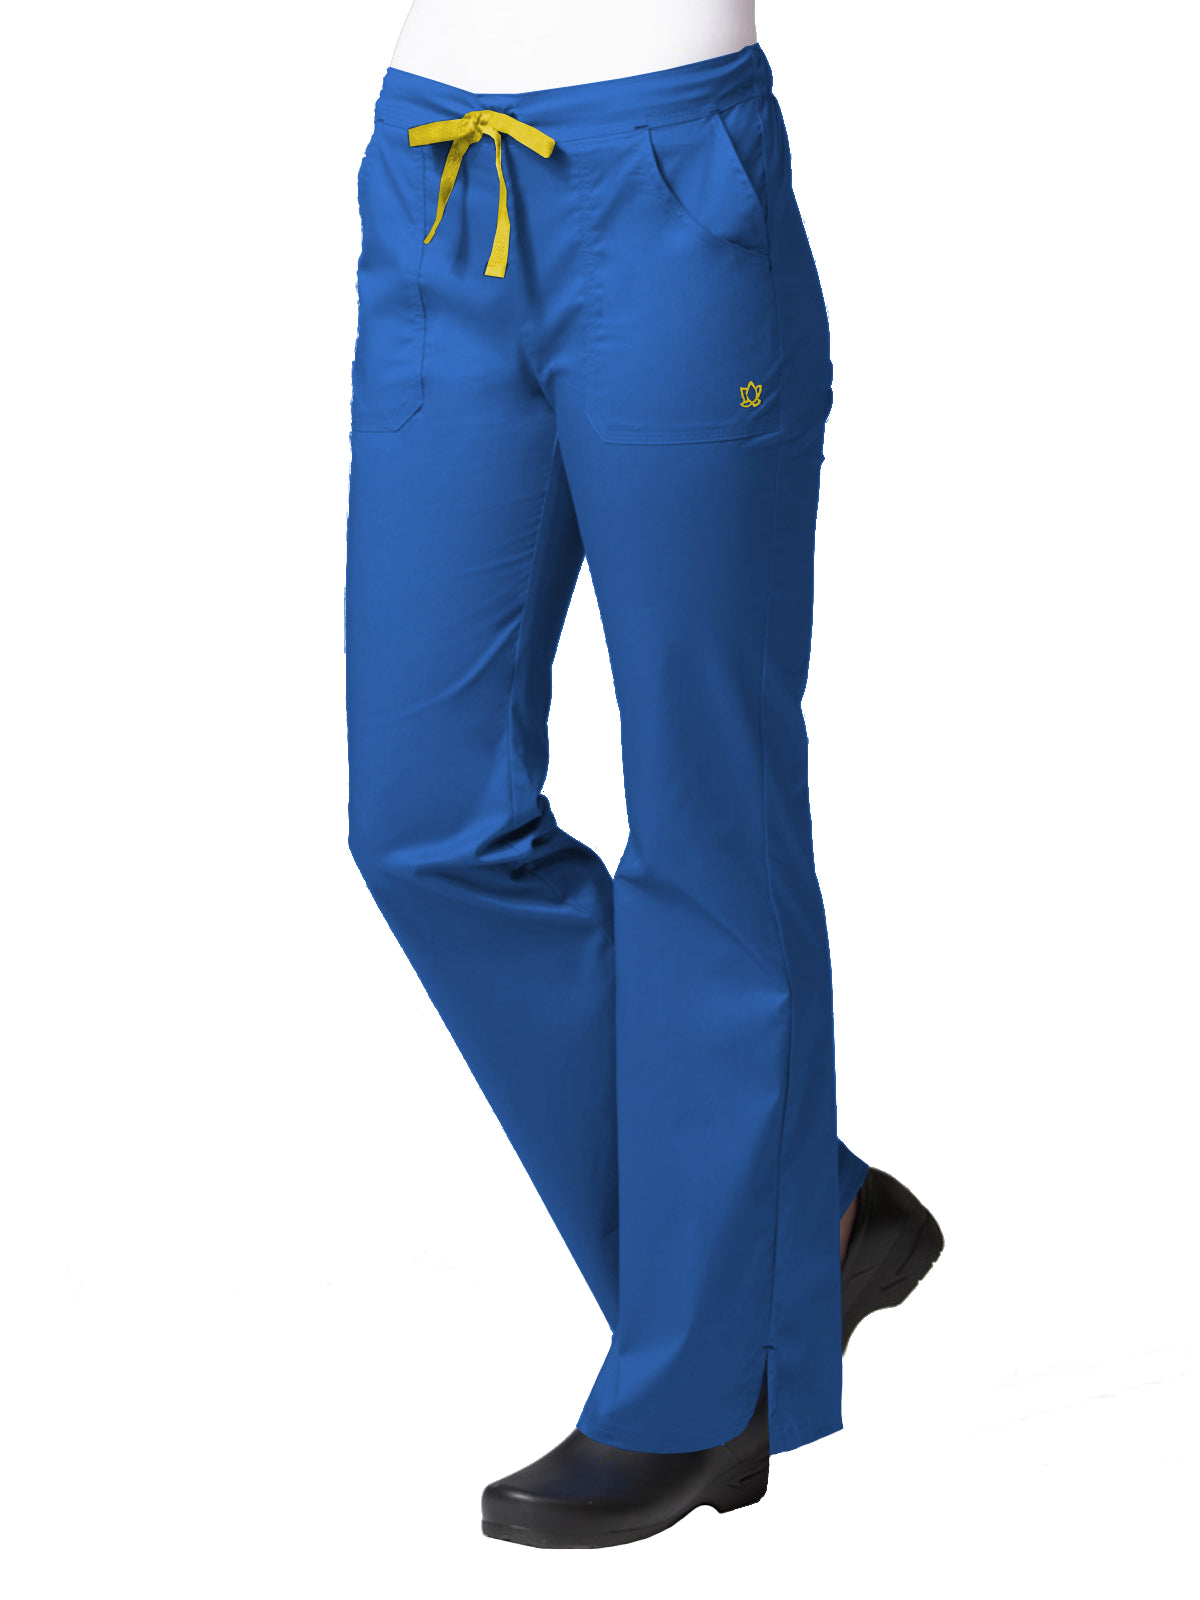 Women's Multi-Pocket Pant - 9102 - Royal Blue/Yellow